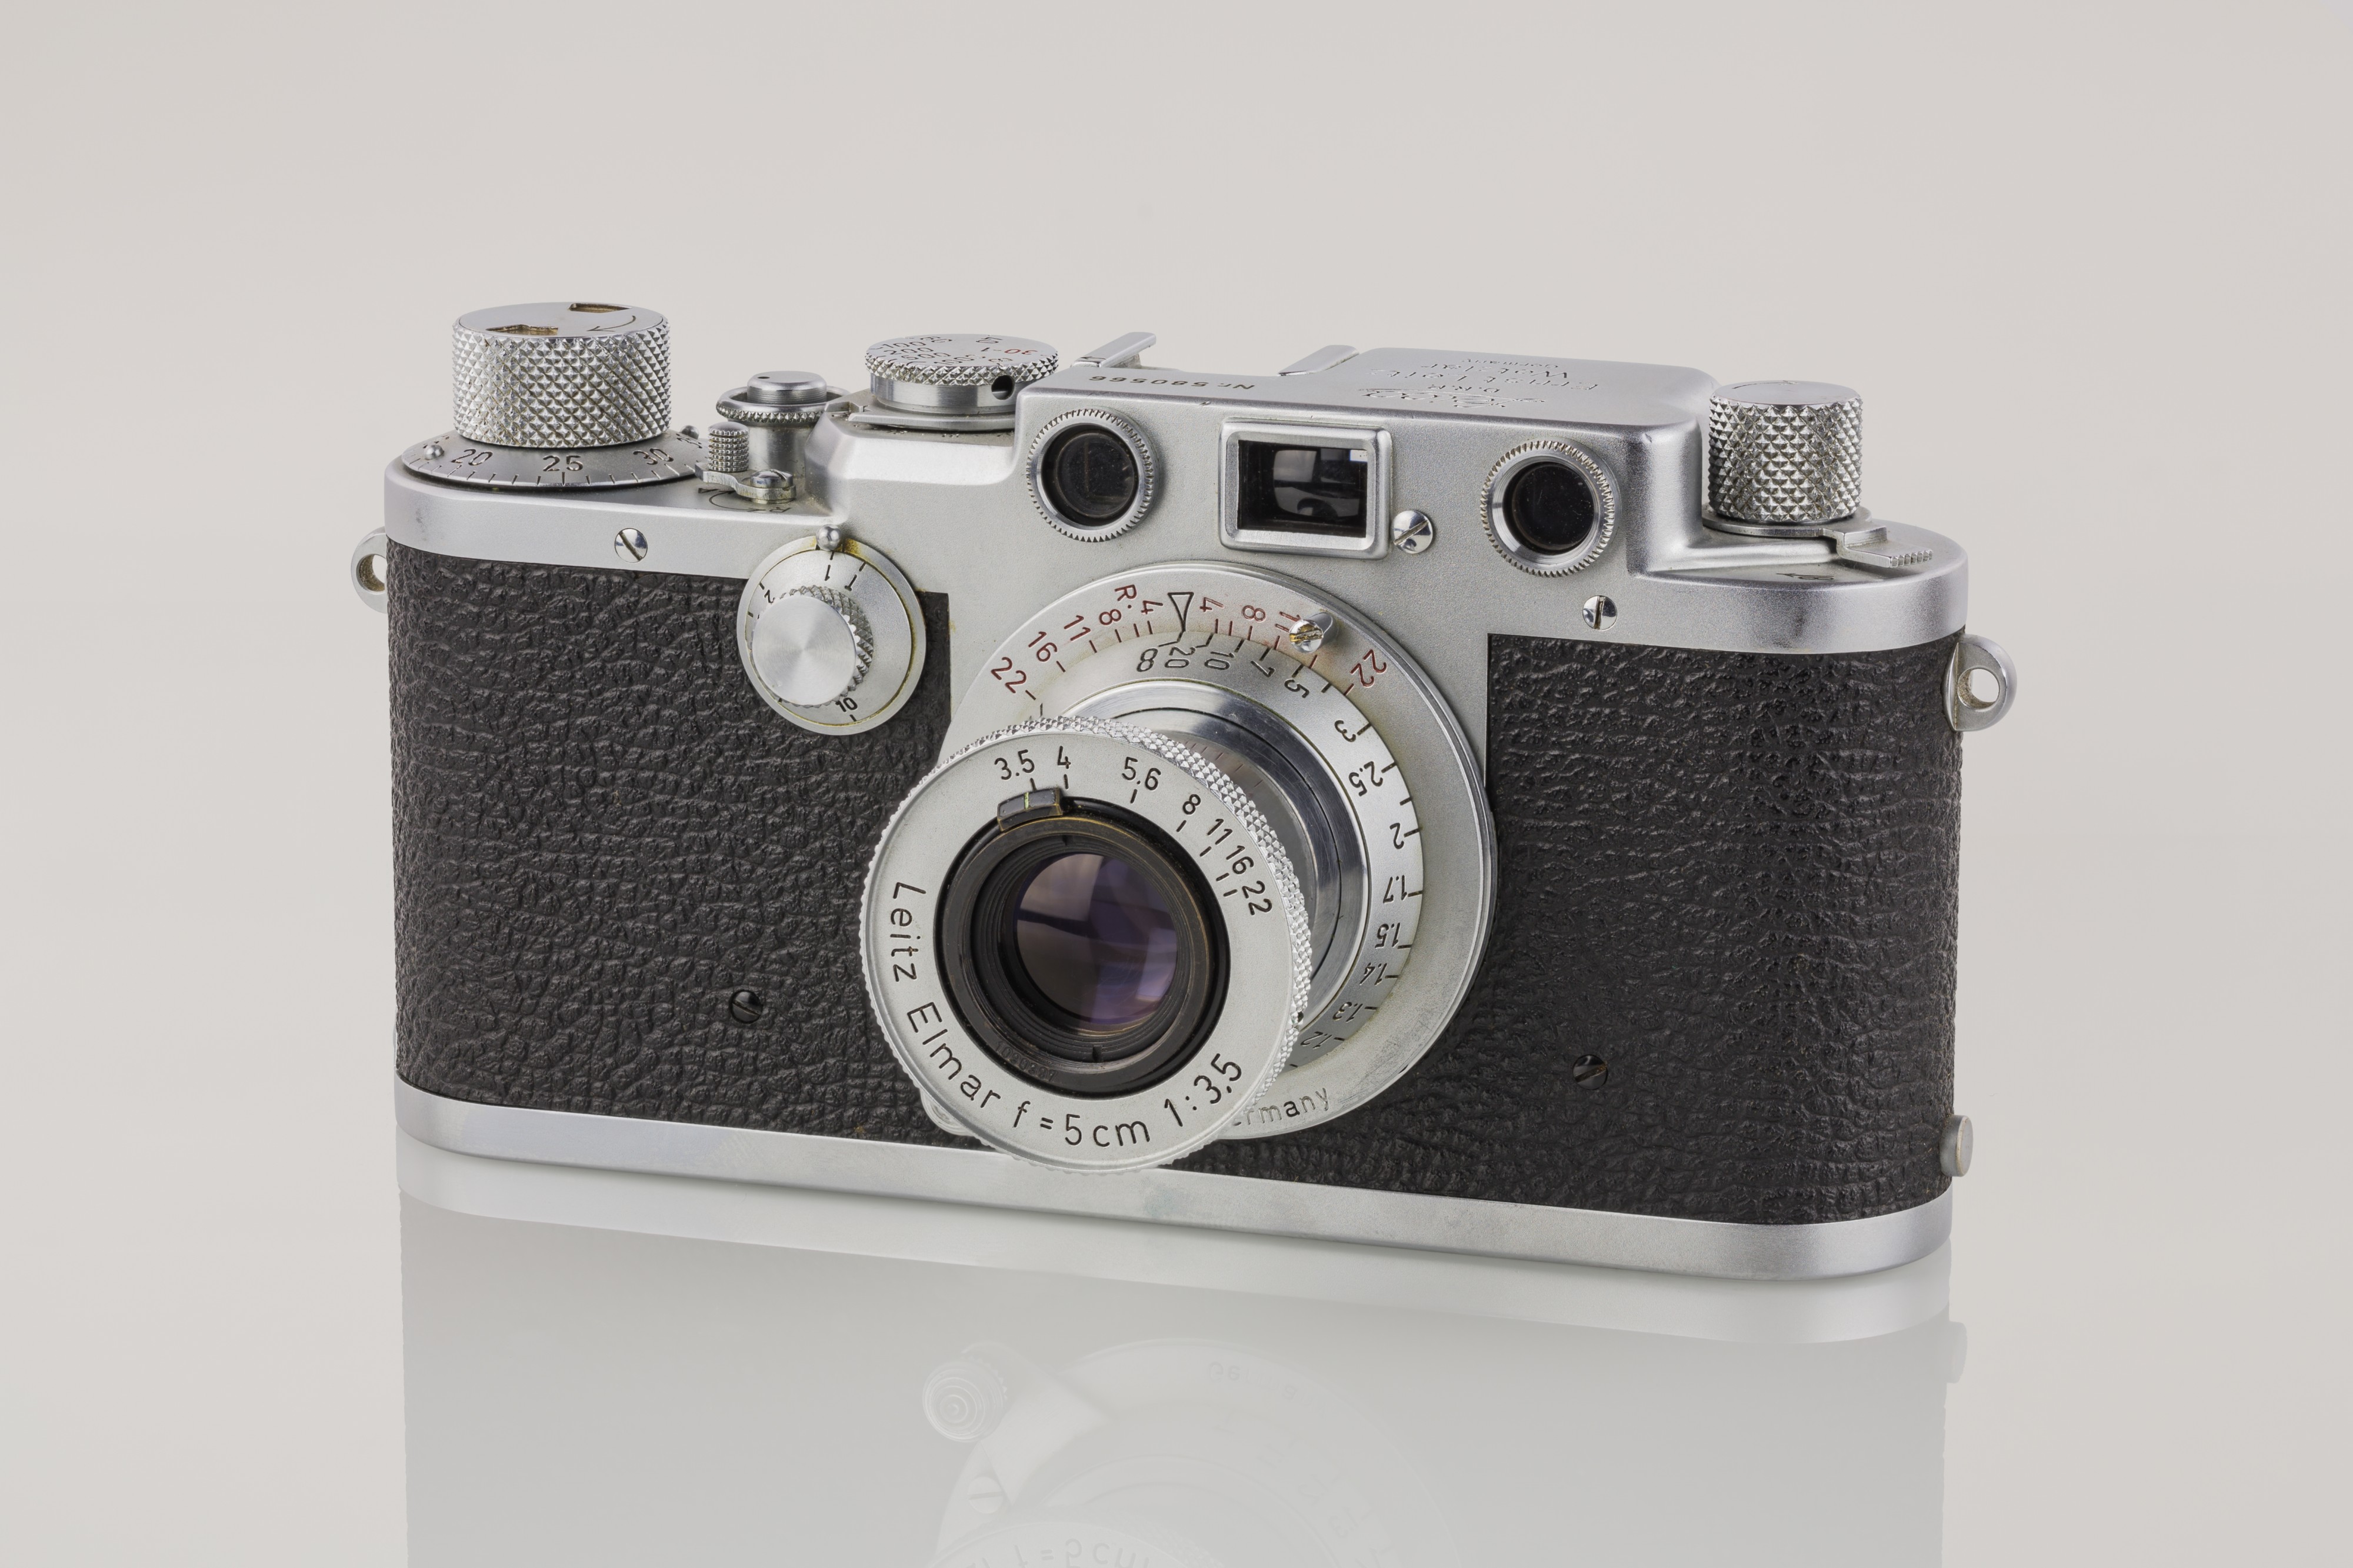 LEI0440 Leica IIIf chrom - Sn. 580566 1951-52-M39 Blitzsynchron front view-6531 hf-